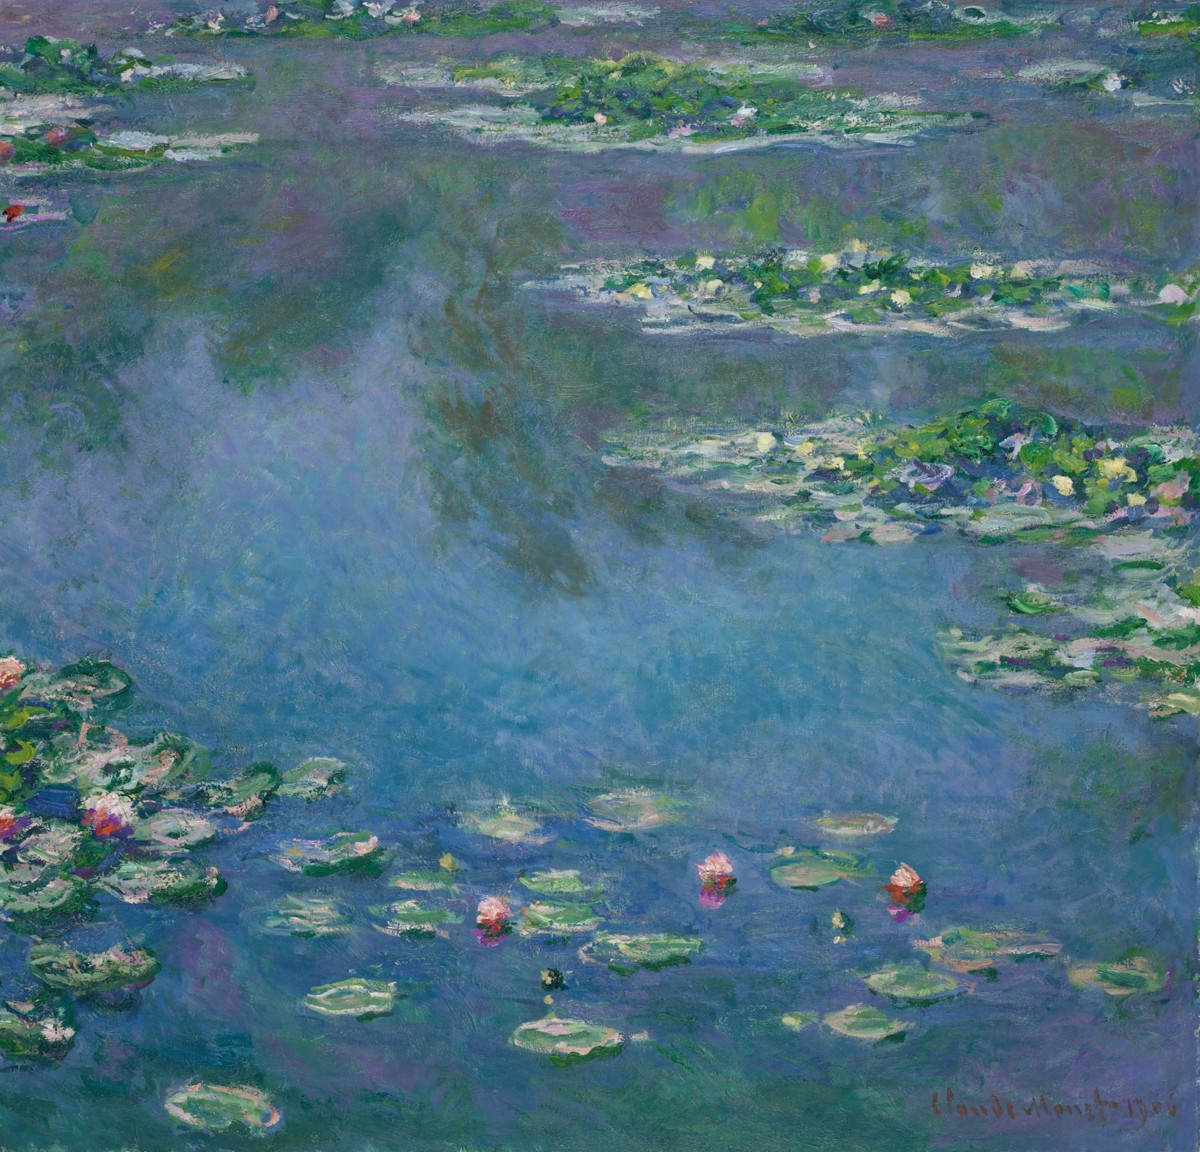 Claude Monet's "Water Lilies"